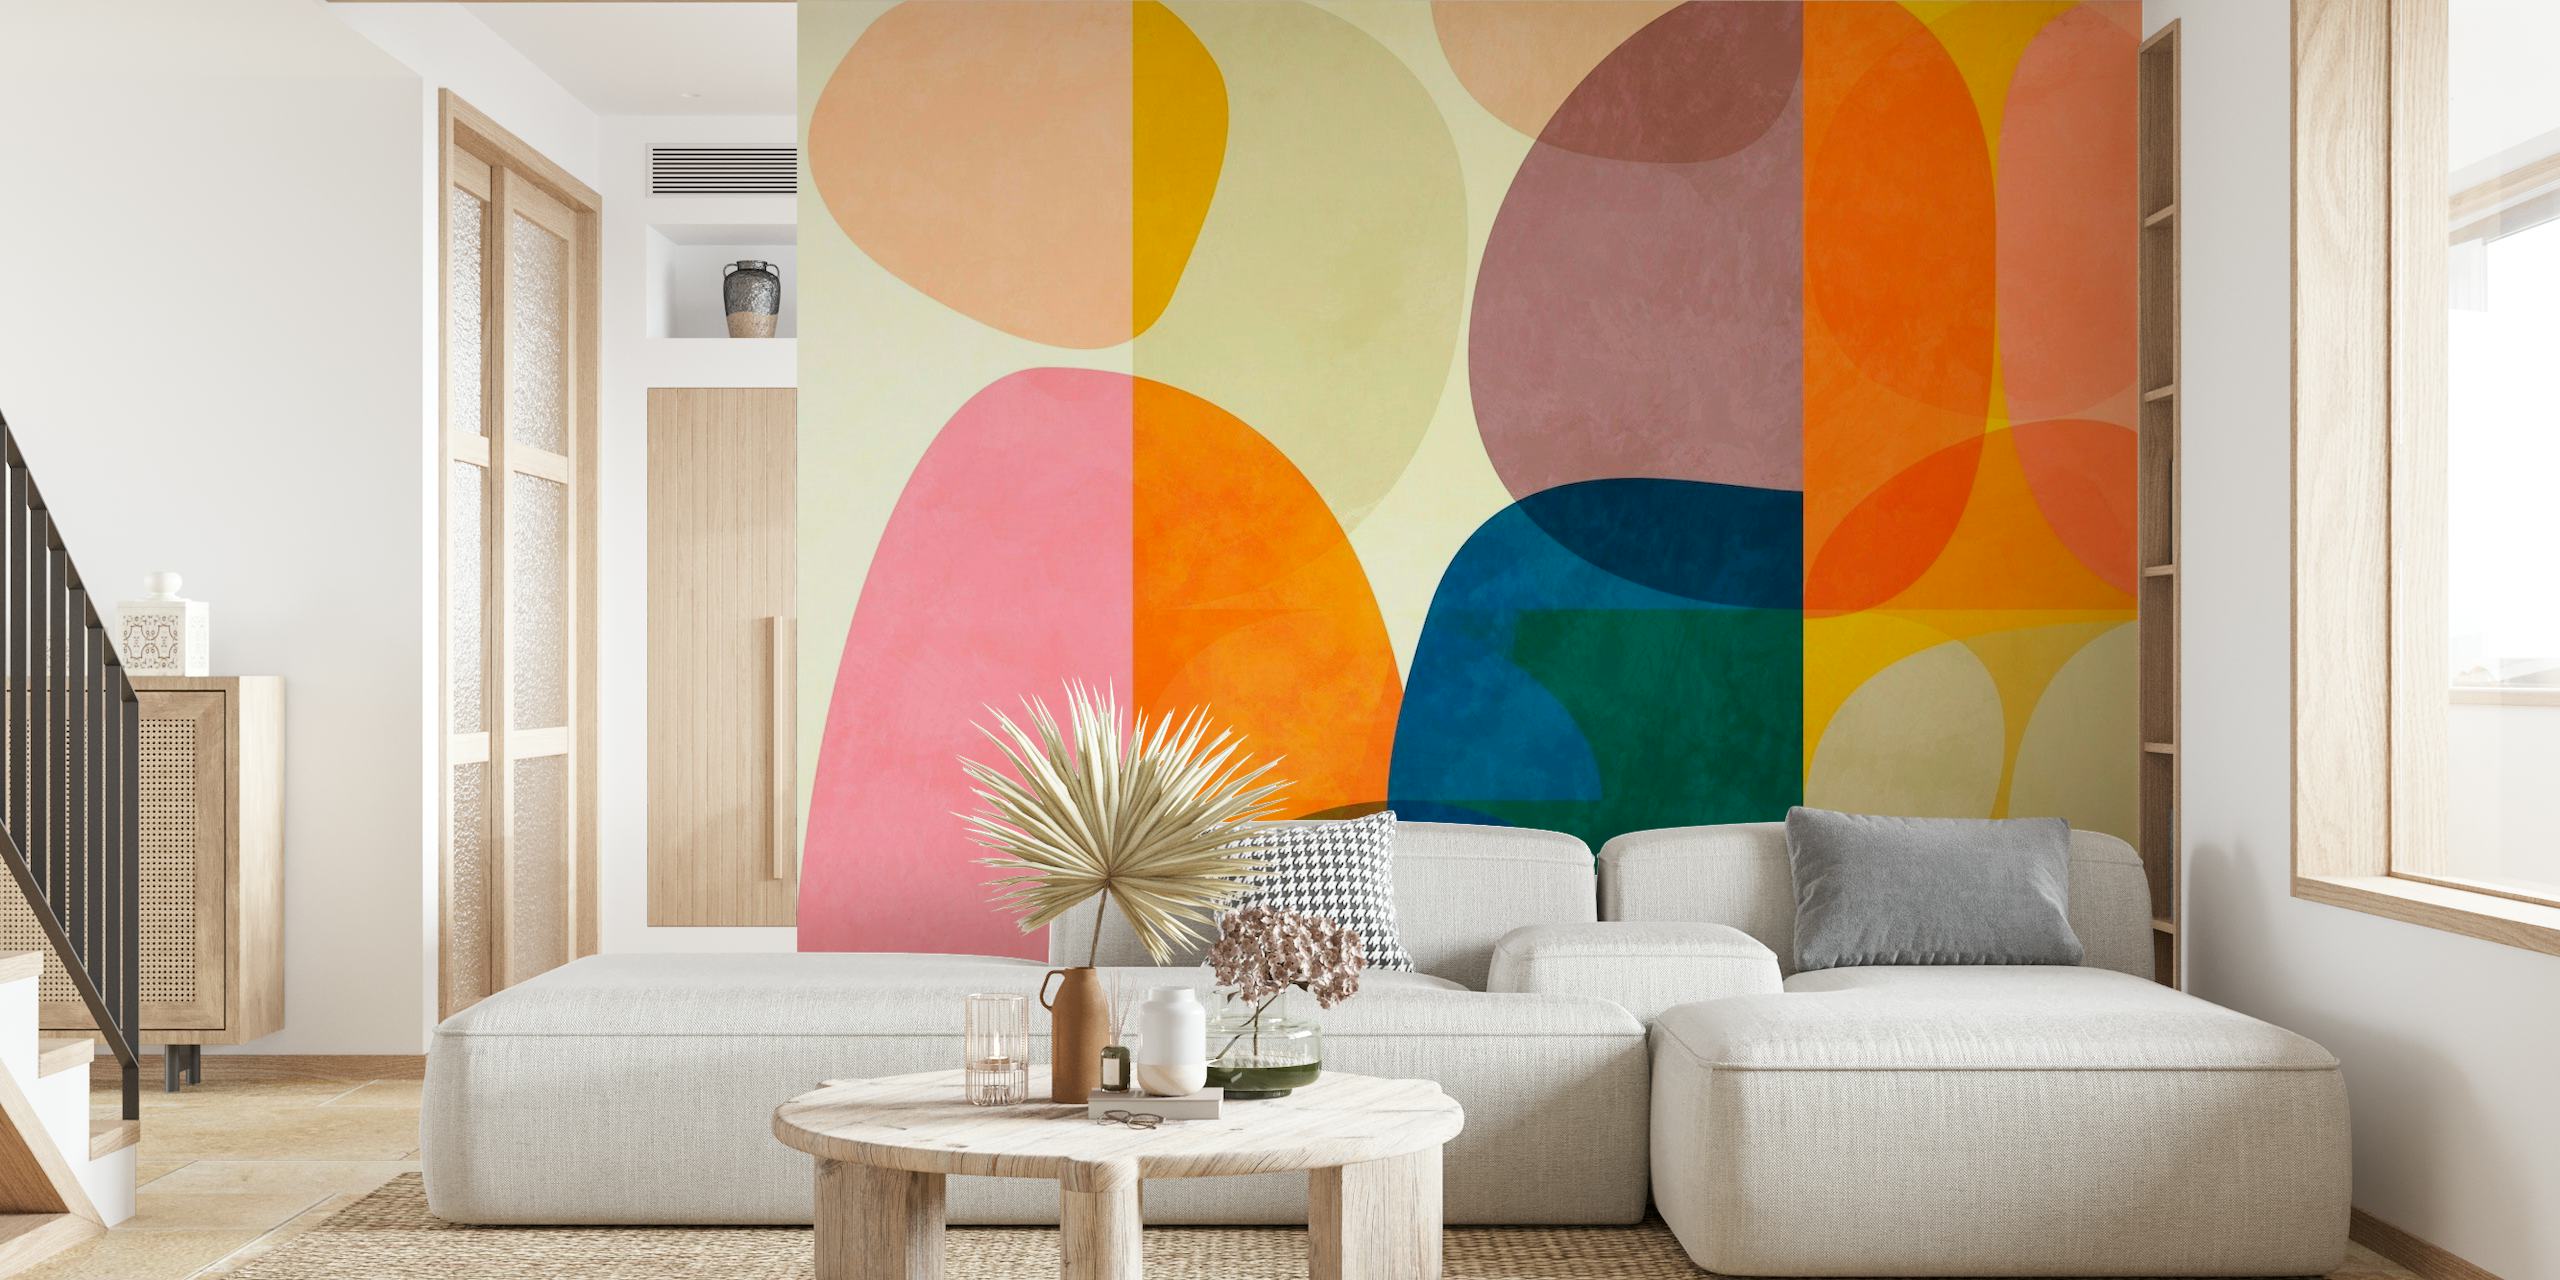 Fotomural colorido de arte abstracto con formas geométricas superpuestas en varios tonos